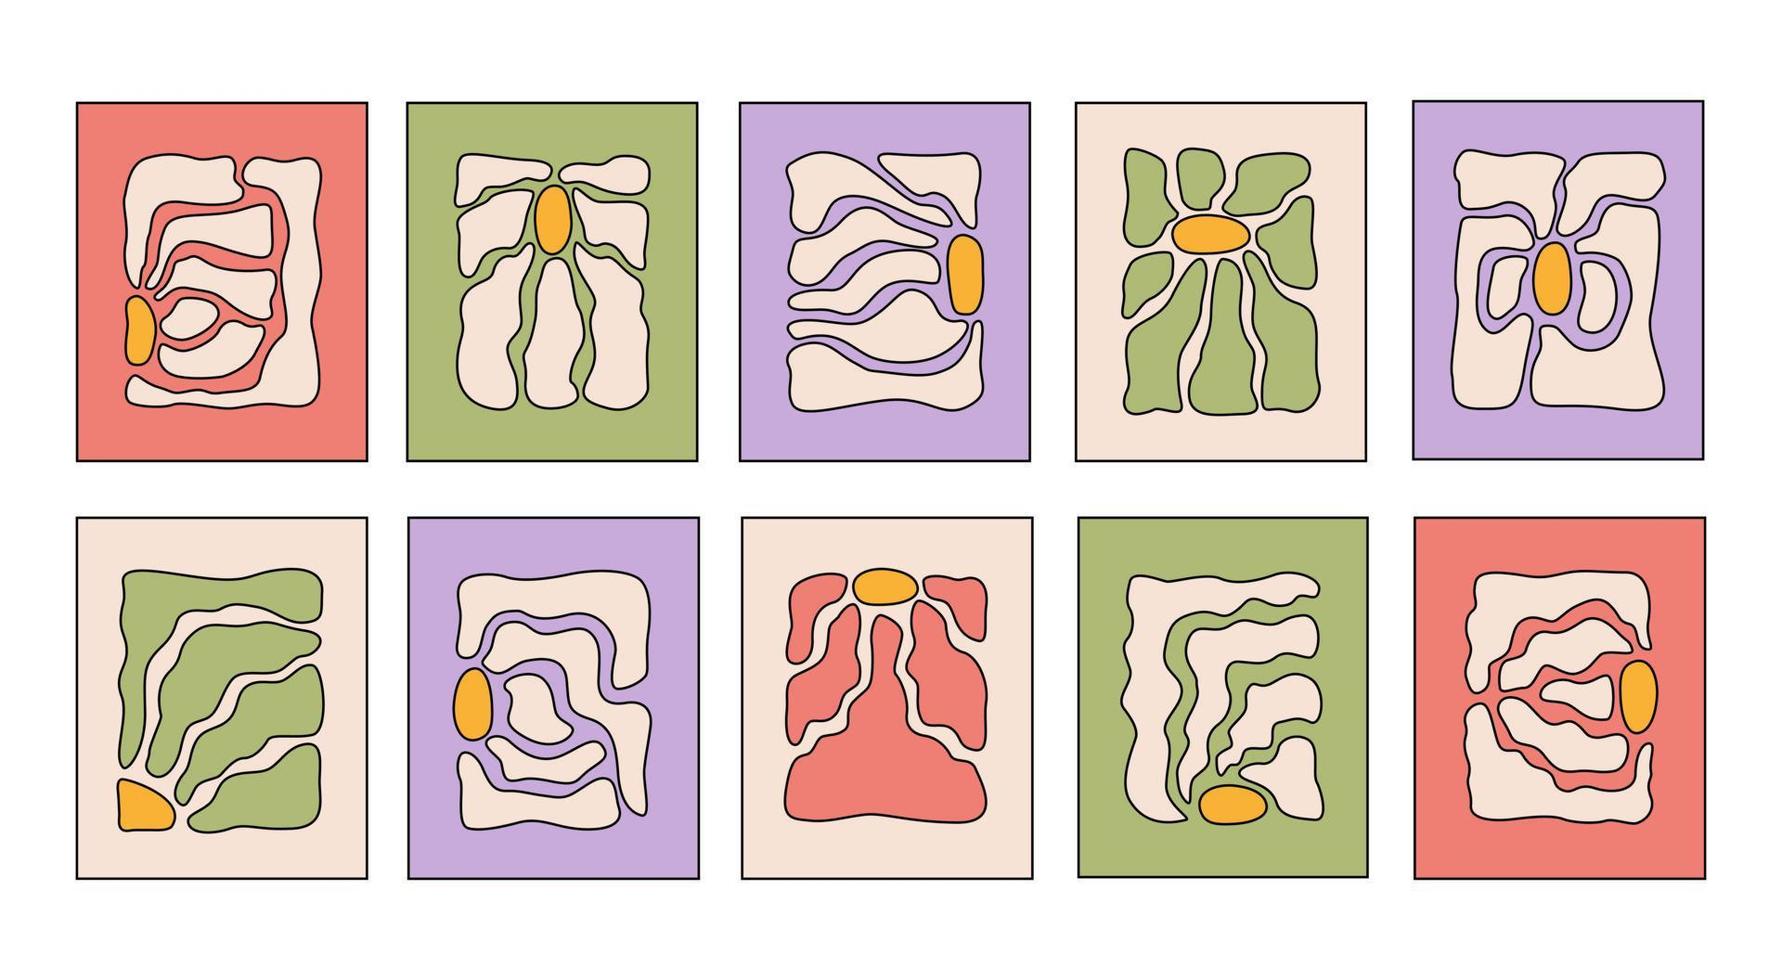 ensemble d'affiches rétro botaniques abstraites avec diverses fleurs groovy en fleurs. décor d'art naïf dans le style des années 60, 70. couleurs pastels. illustration vectorielle dessinée à la main à la mode vecteur